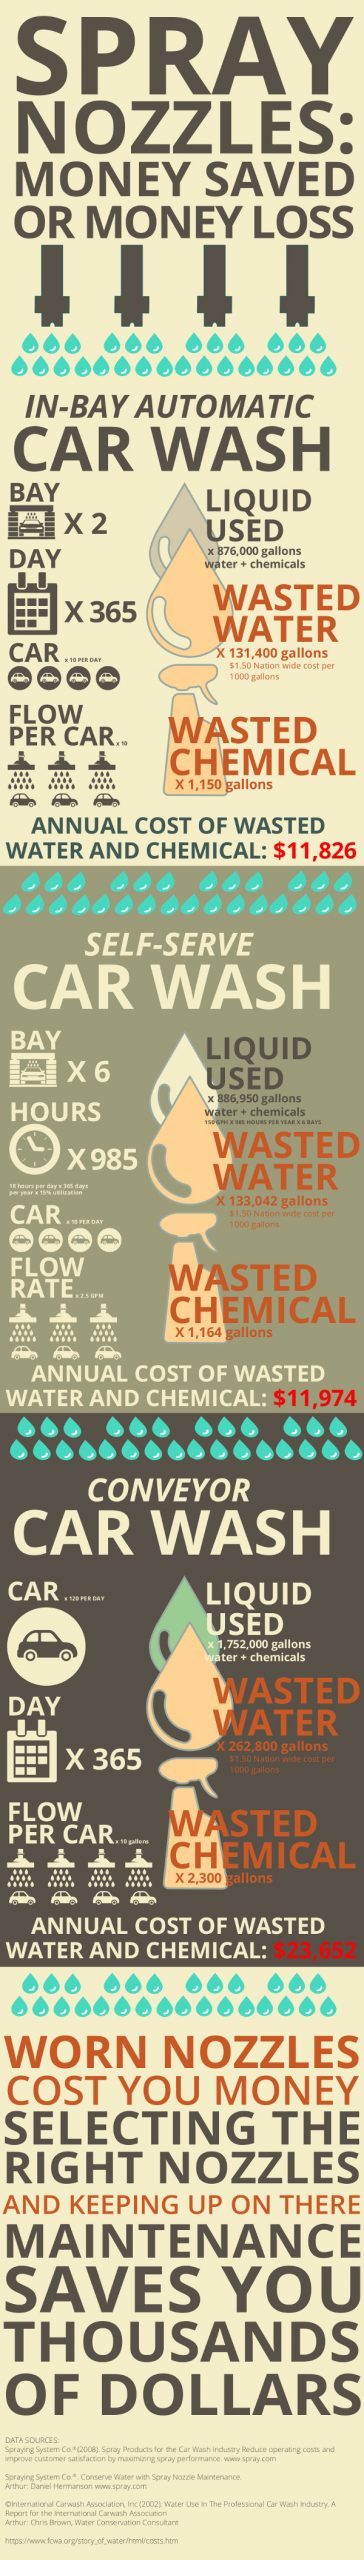 PR-Spray_nozzle_infographic